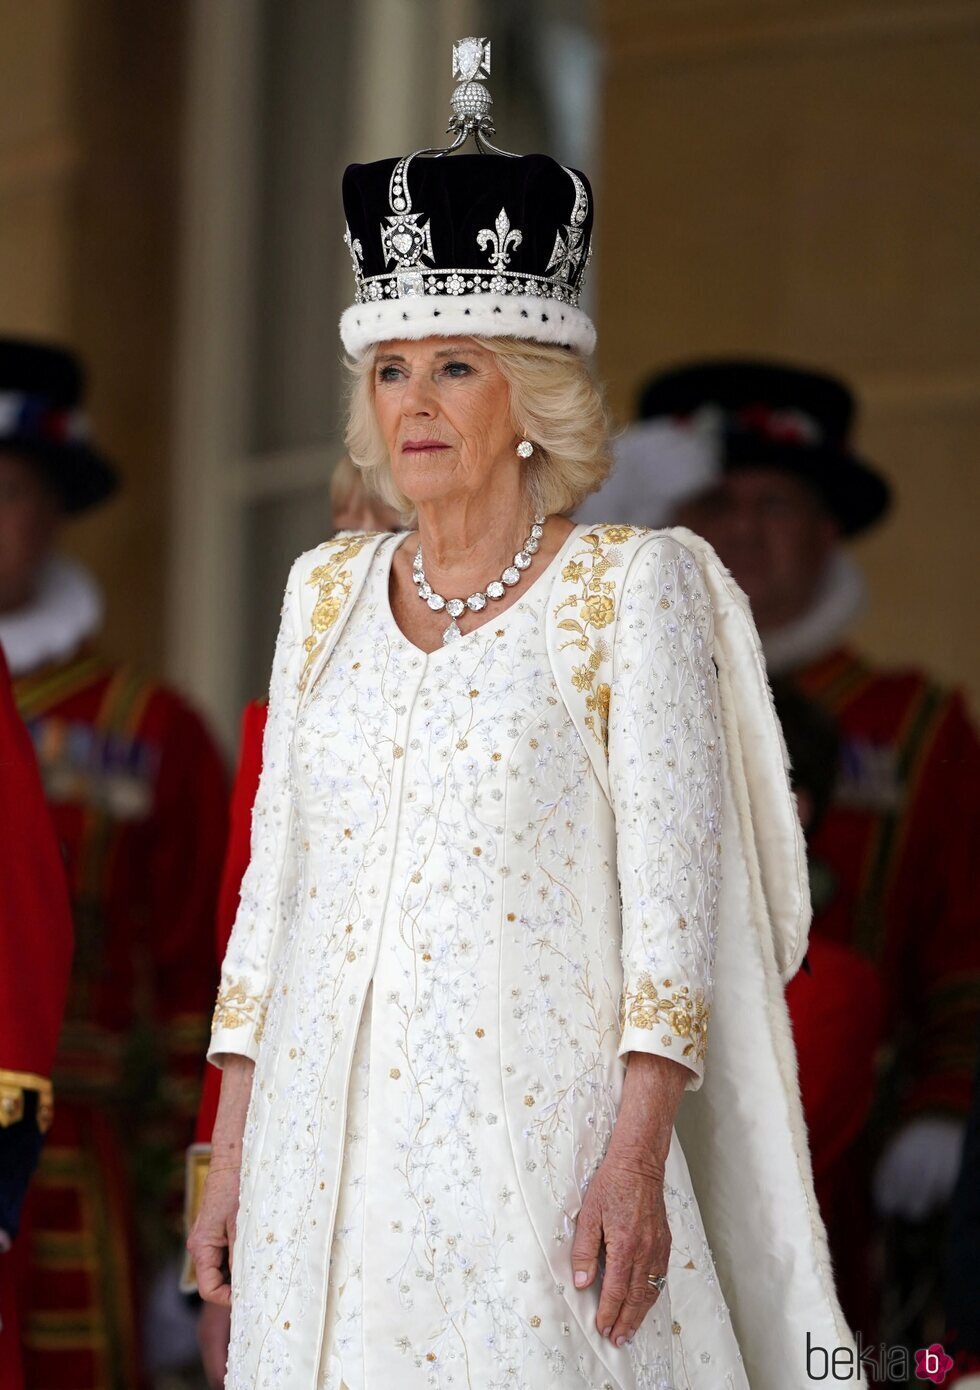 La Reina Camilla tras convertirse en Reina consorte